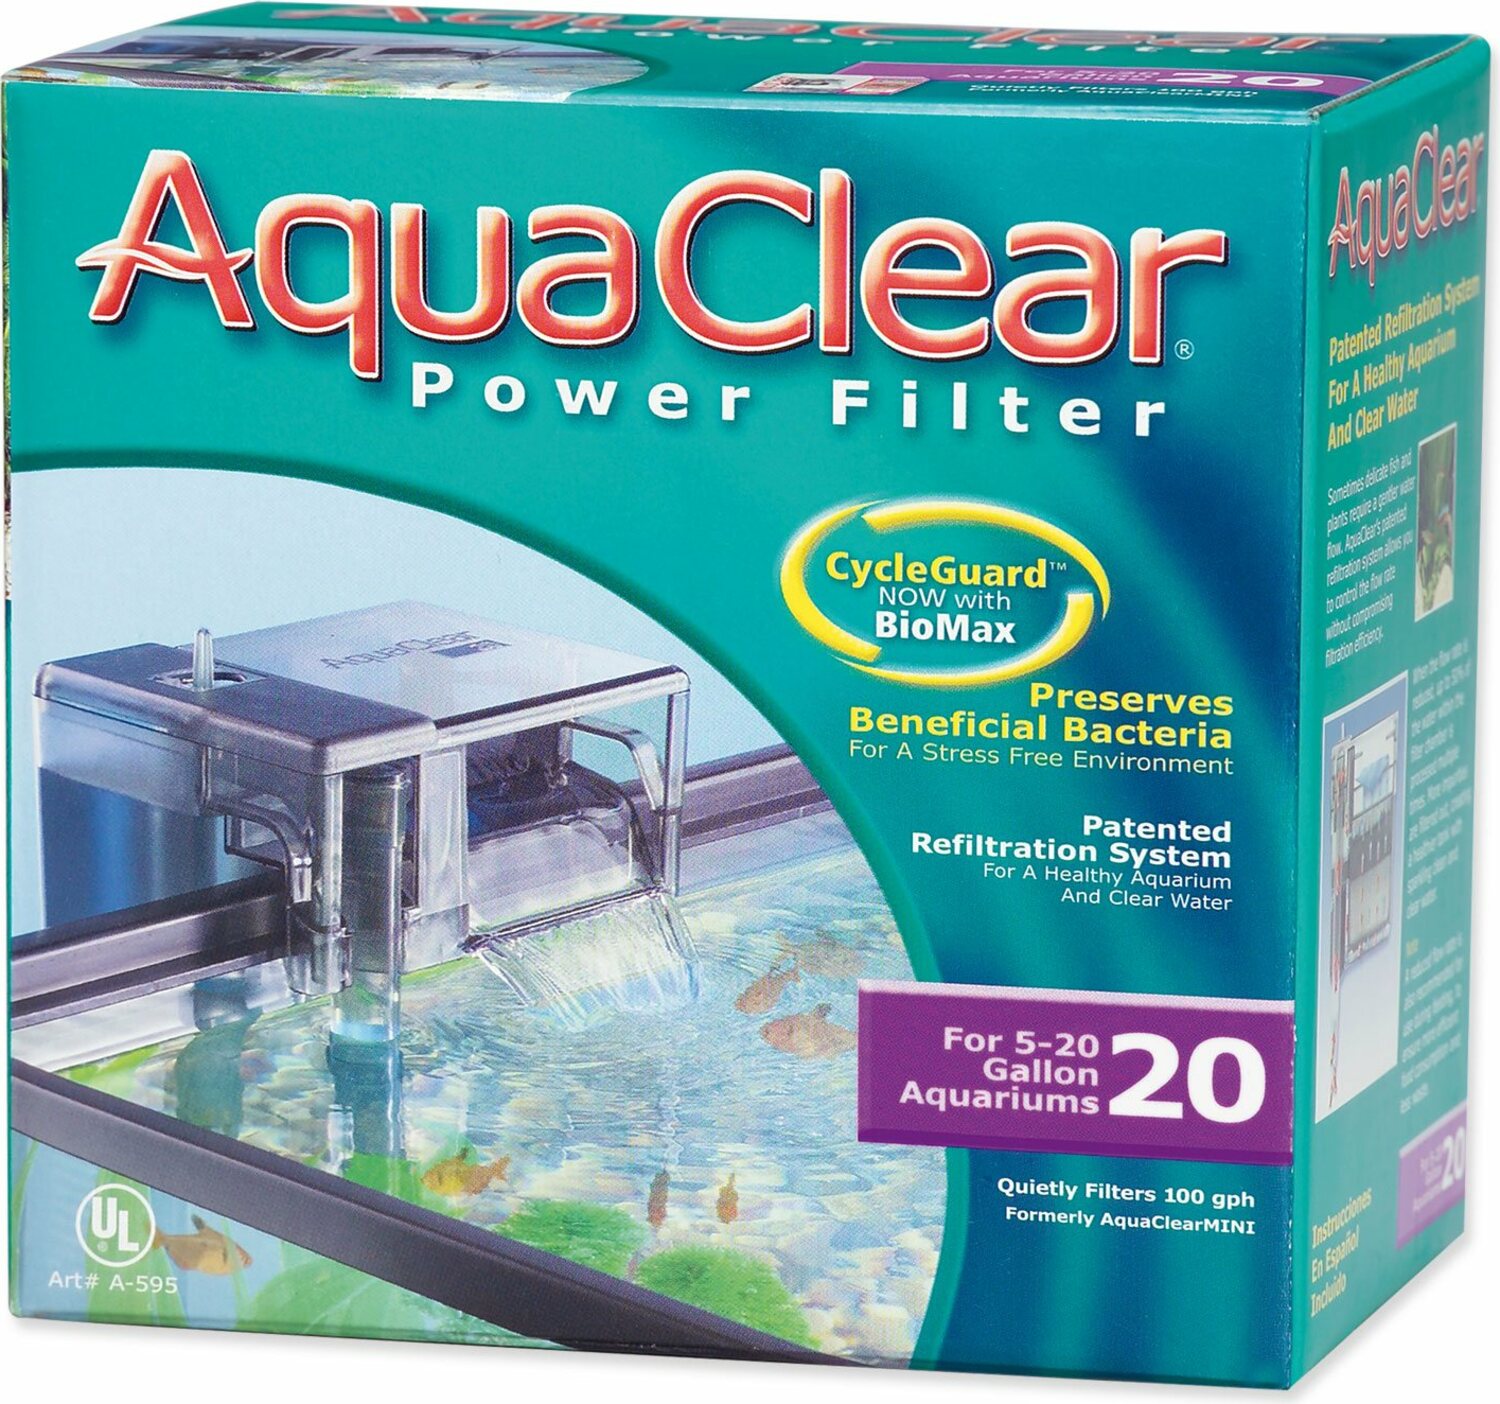 Filtr Aqua Clear 20 vnější, 378l/h